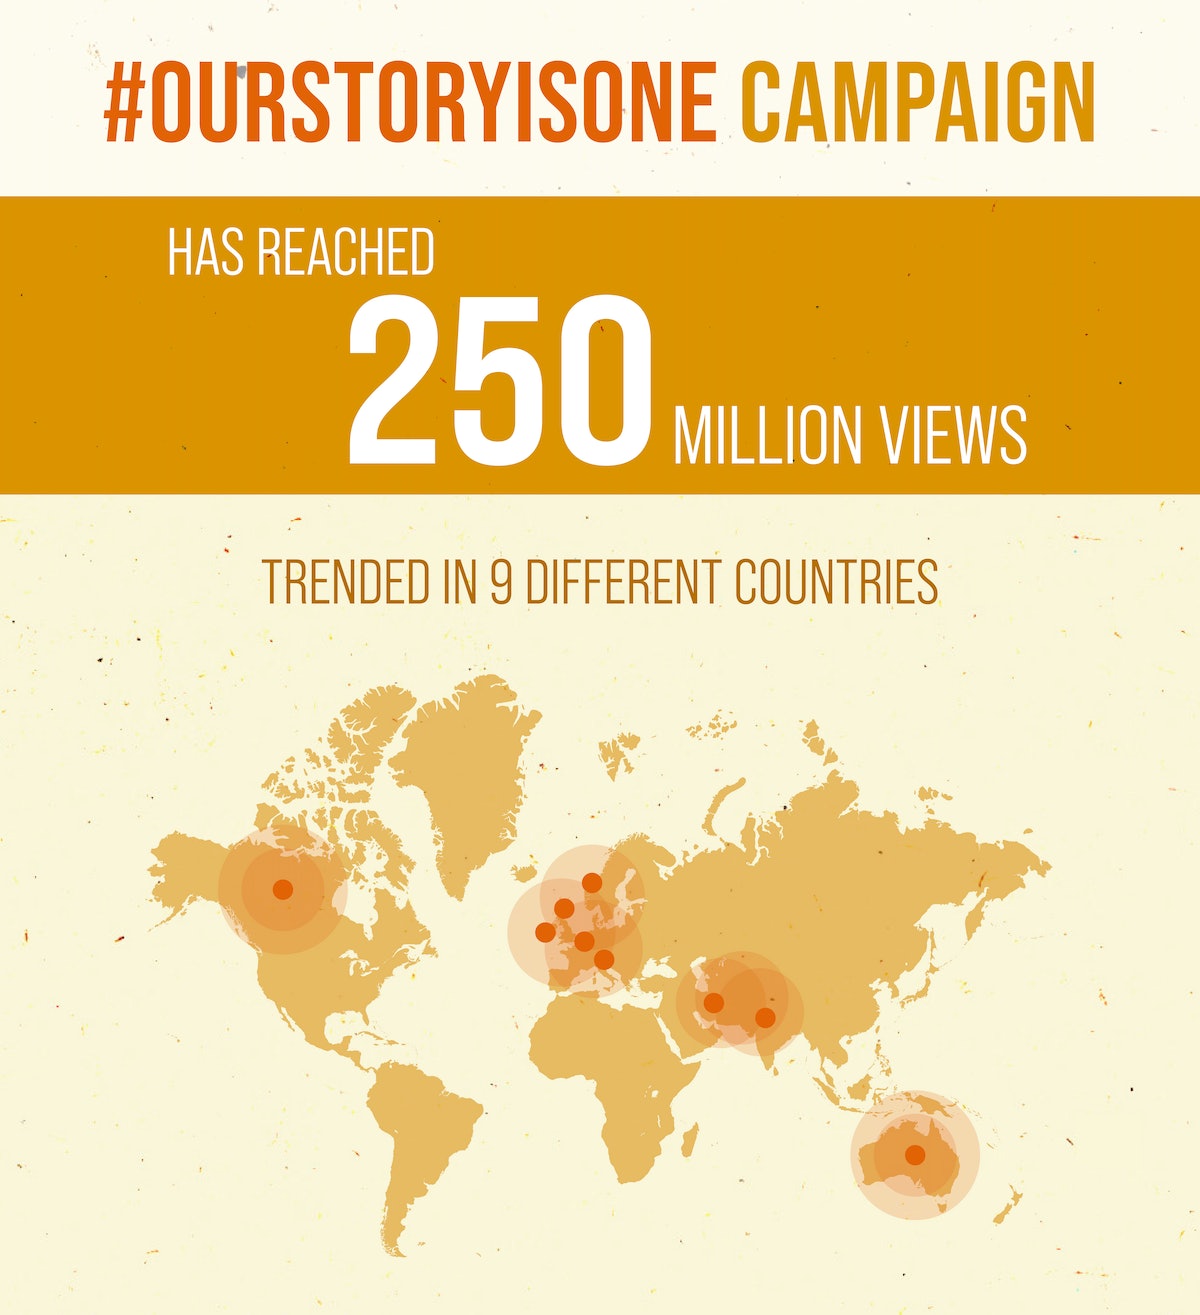 La campagne #OurStoryIsOne a atteint à ce jour quelque 250 millions de vues dans plus de 33 langues. Le 18 juin, un évènement de deux heures sur les réseaux sociaux a été très suivi en Iran ainsi que dans huit autres pays sur quatre continents, l’Australie, le Canada, l’Inde, l’Irlande, les Pays-Bas, la Norvège, la Suisse et le Royaume-Uni.